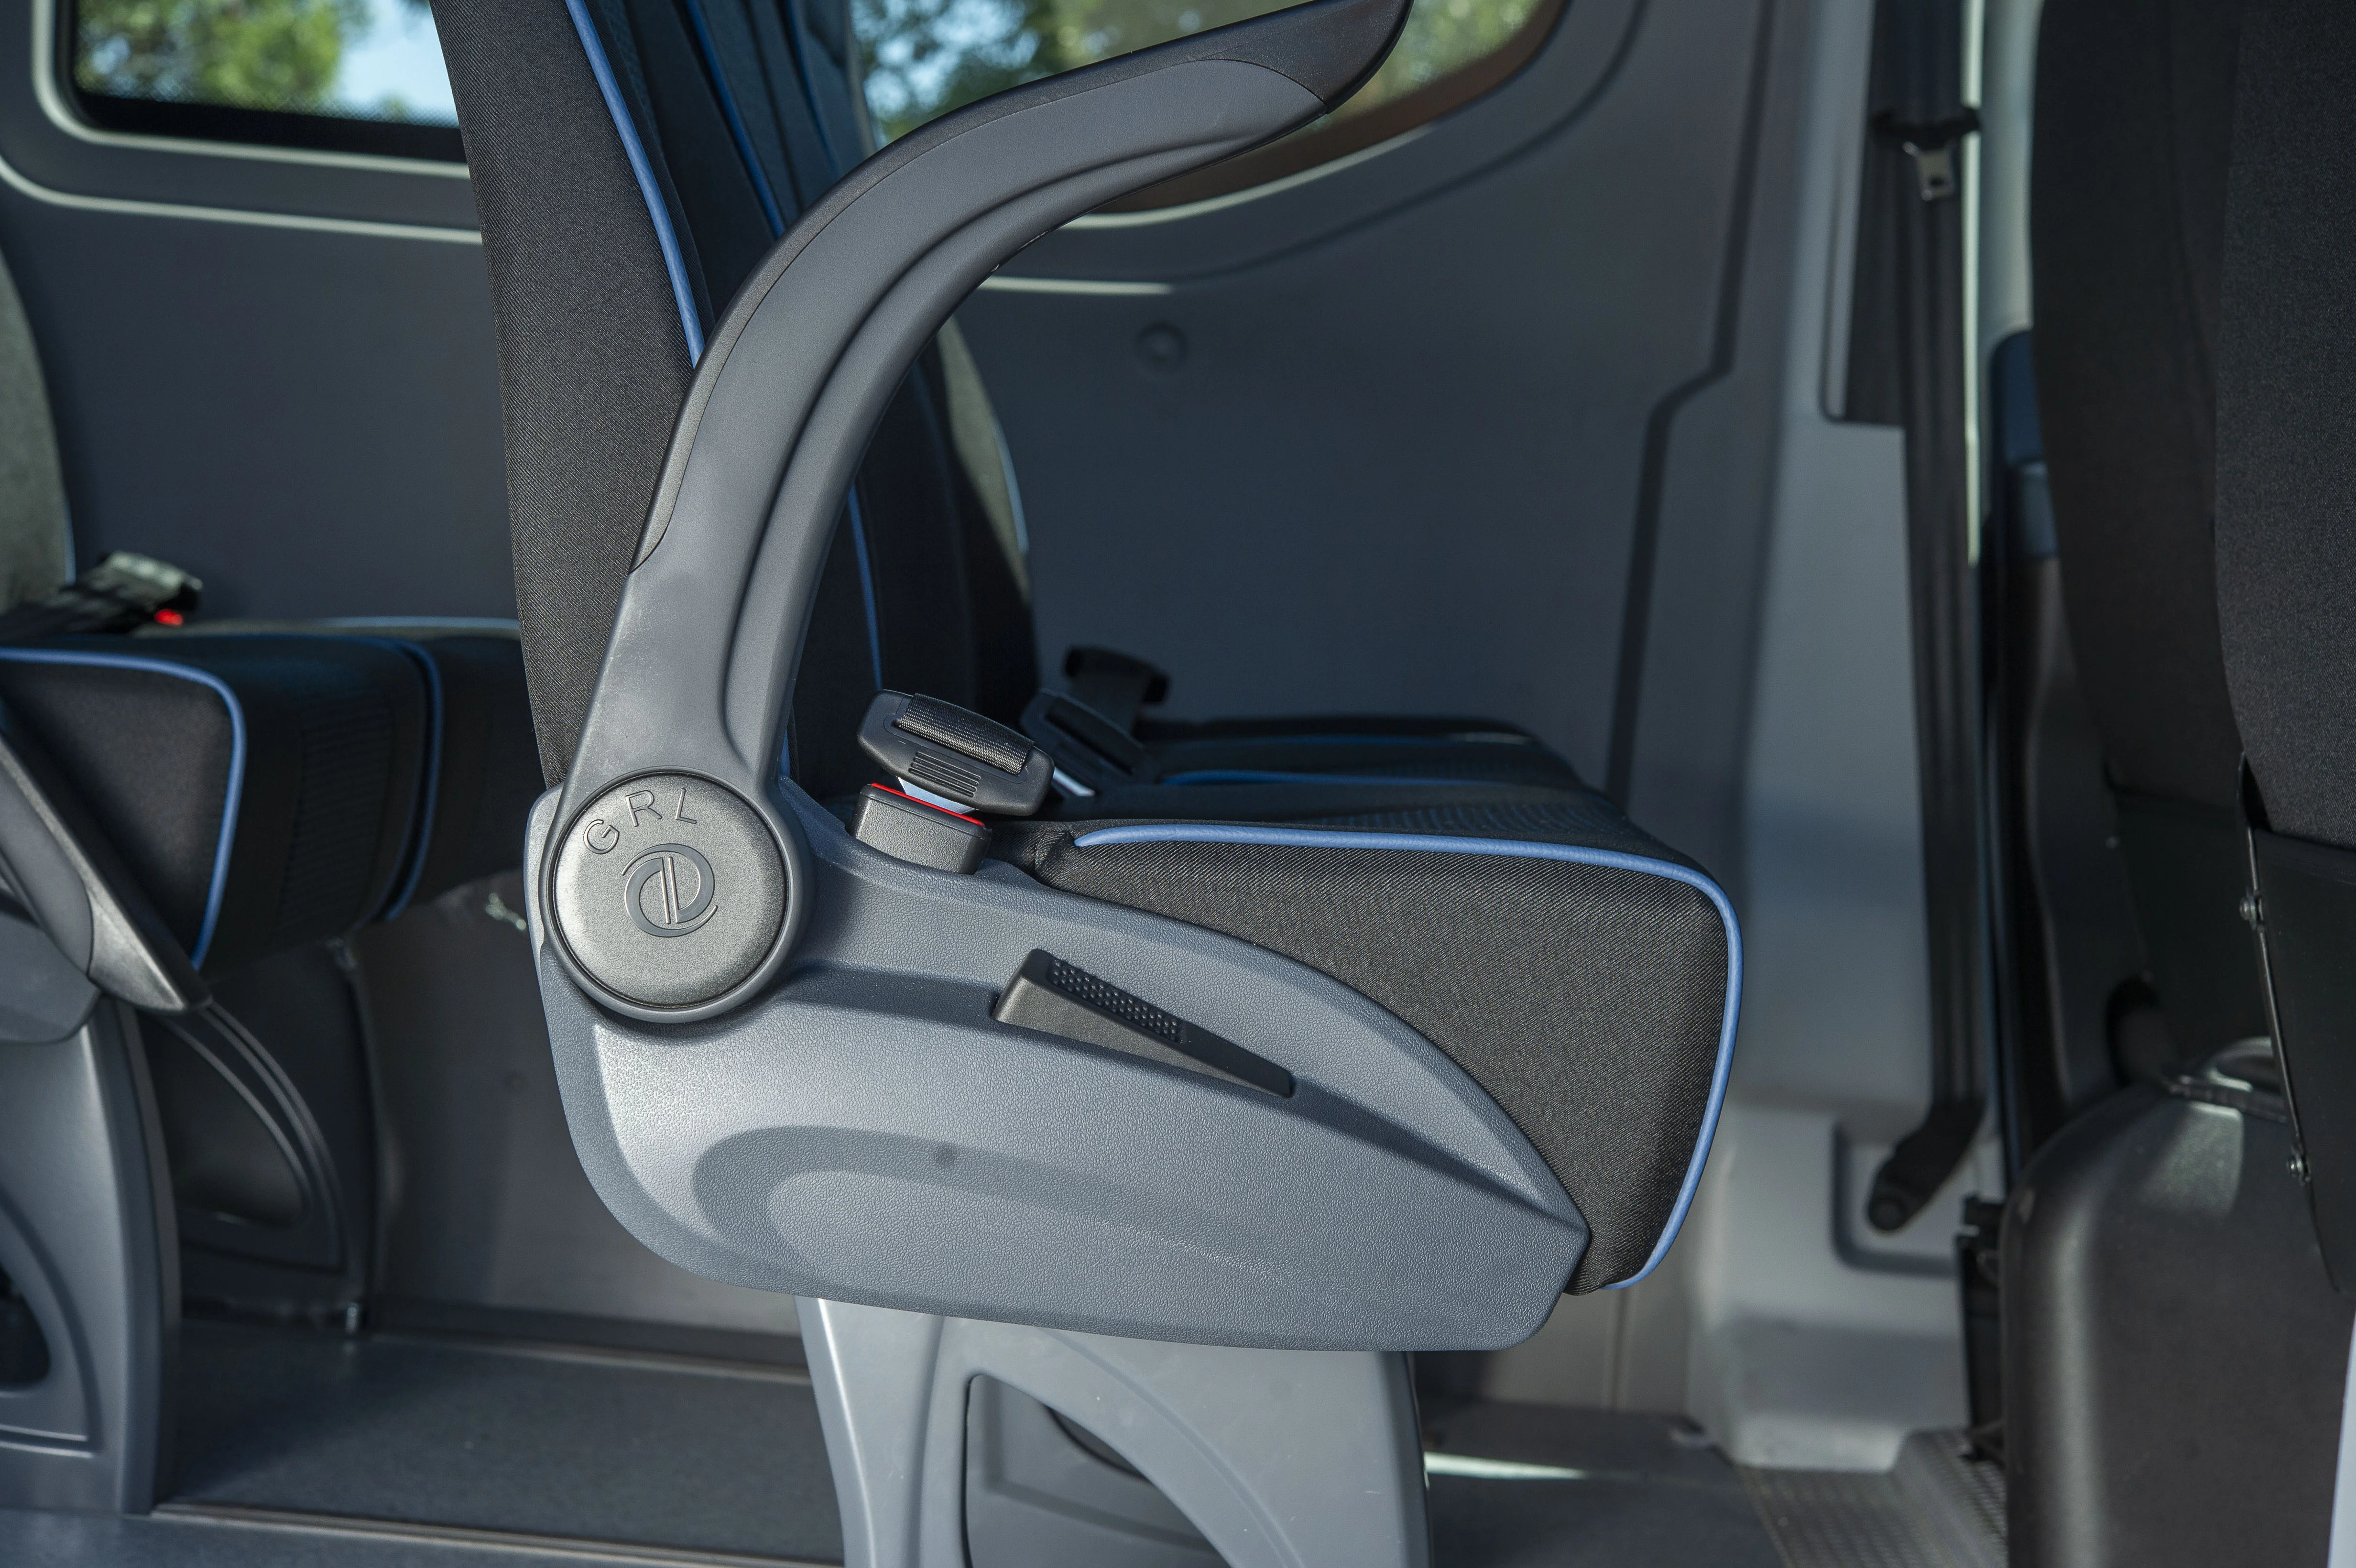 Dettaglio del bracciolo di un sedile installato in un minibus progettato da Silor, allestimento veicoli commerciali 